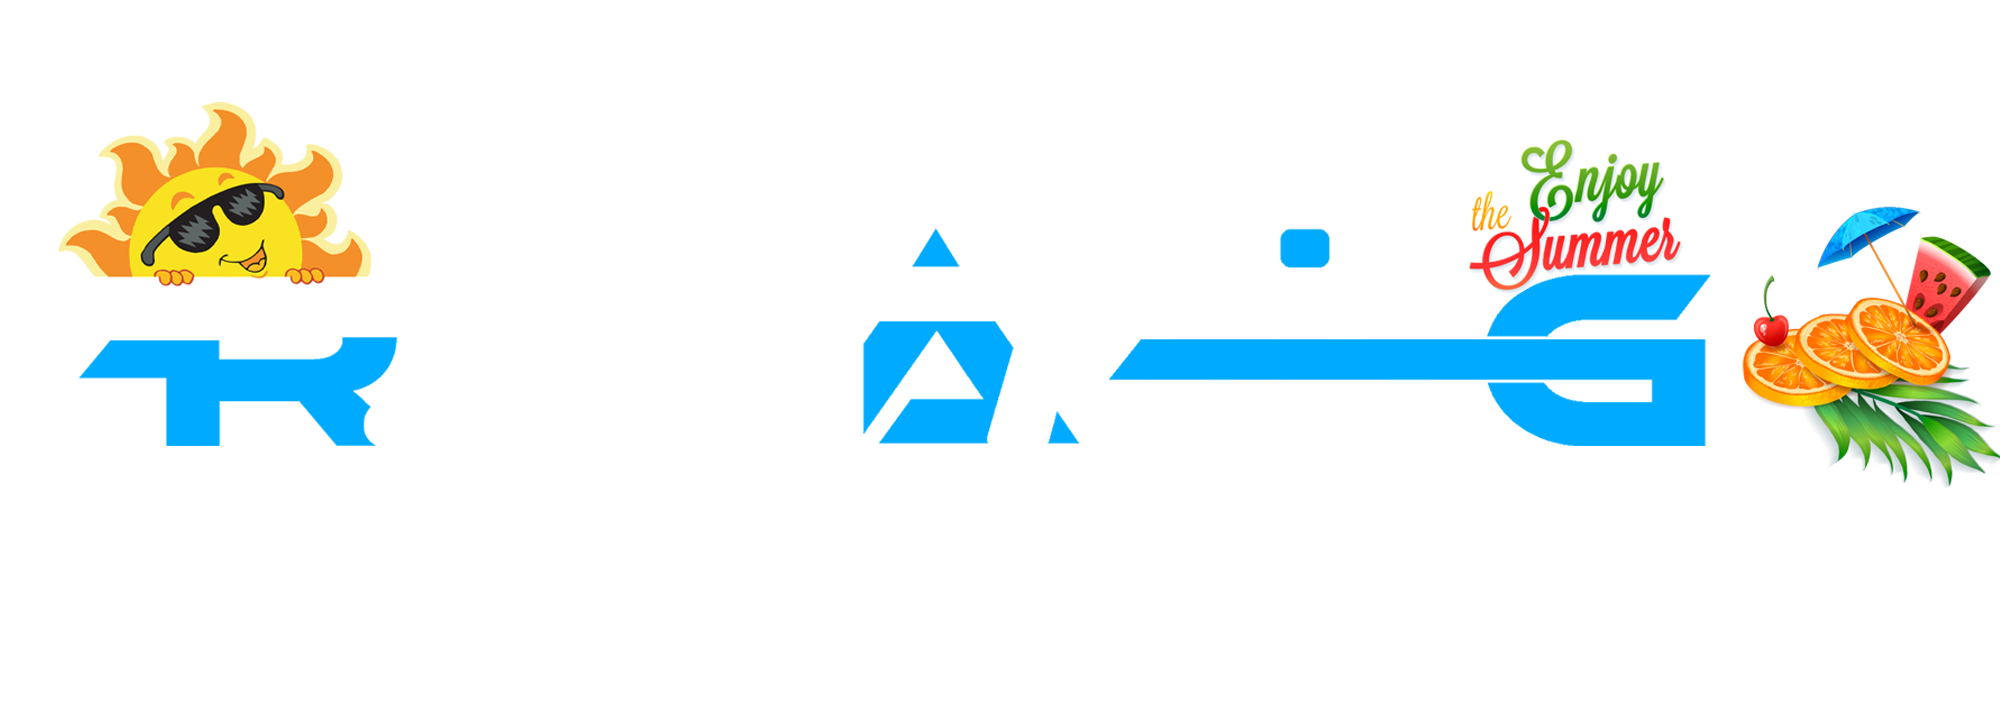 Grz Gaming